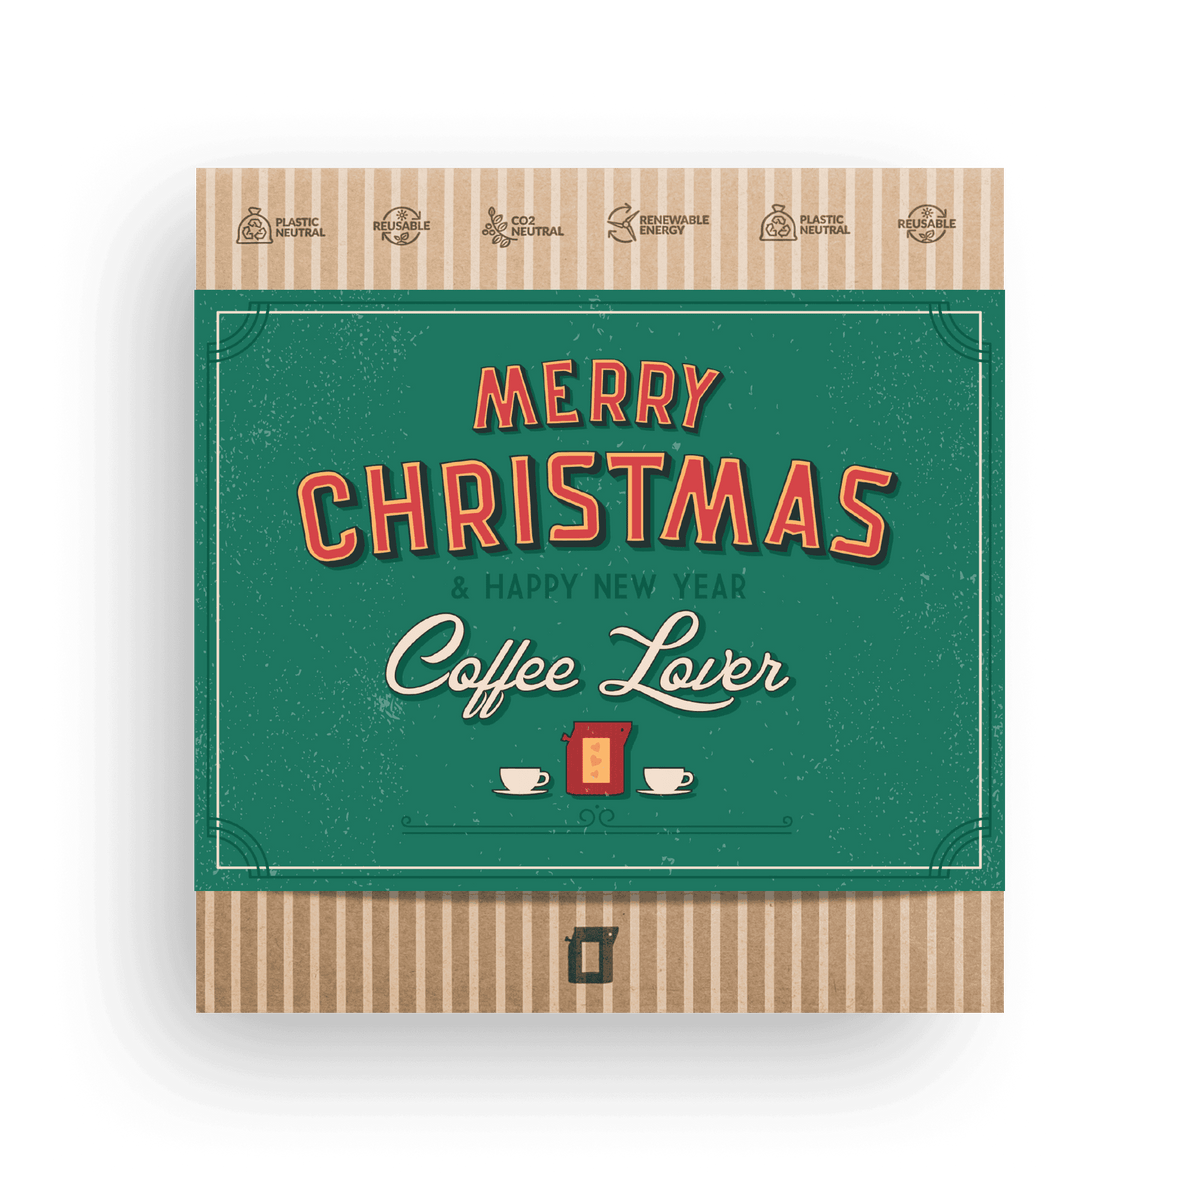 MERRY CHRISTMAS RETRO COFFEE GIFT BOX